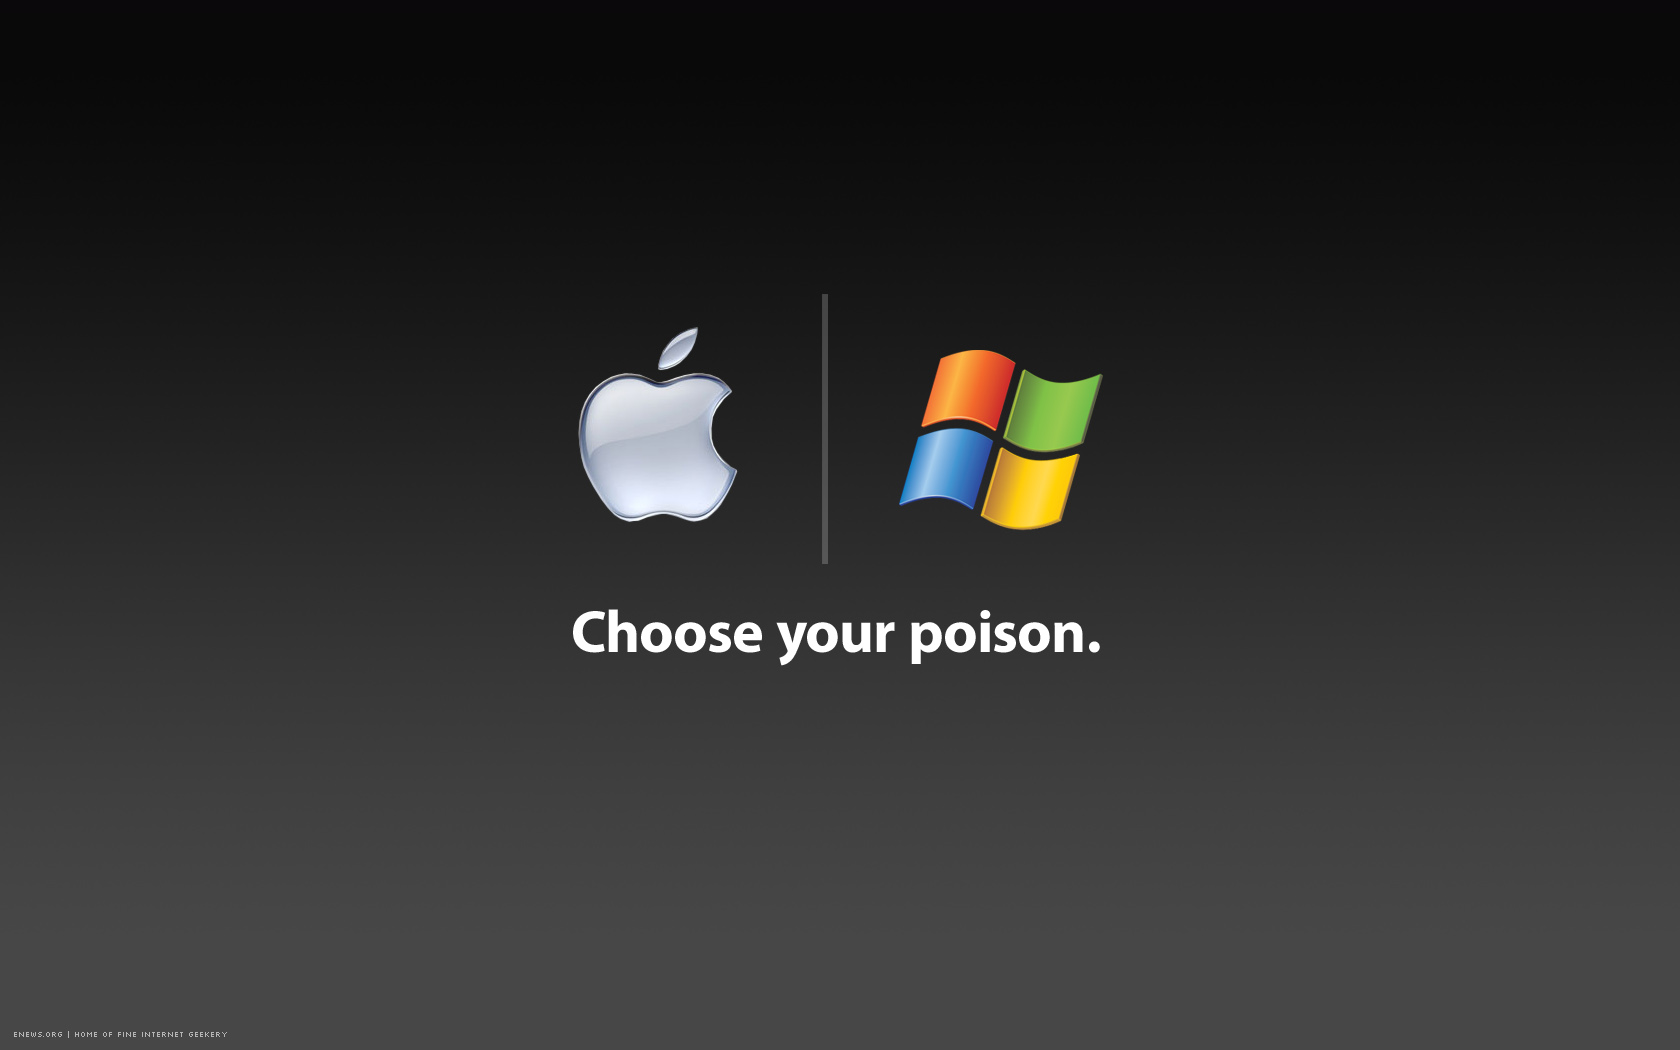 mac can run windows